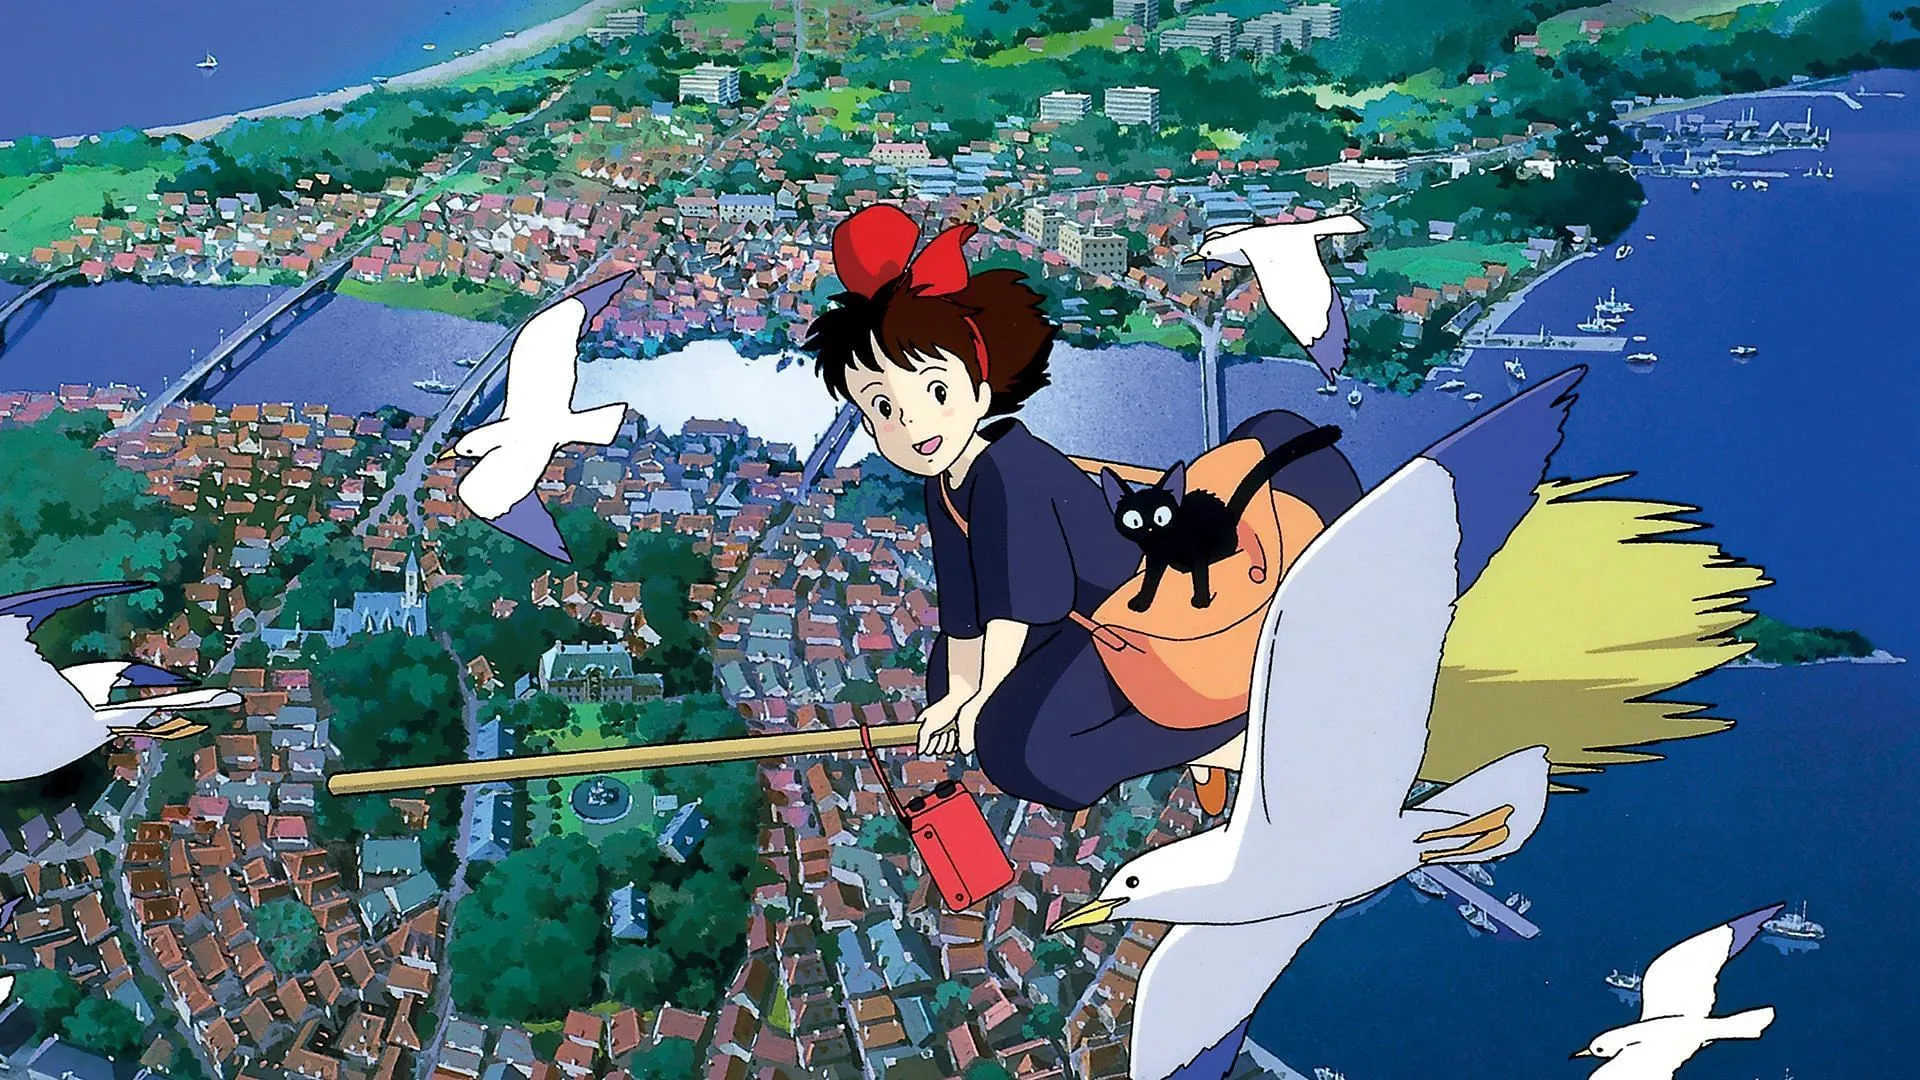 Service de livraison de Kiki (Image via Studio Ghibli)